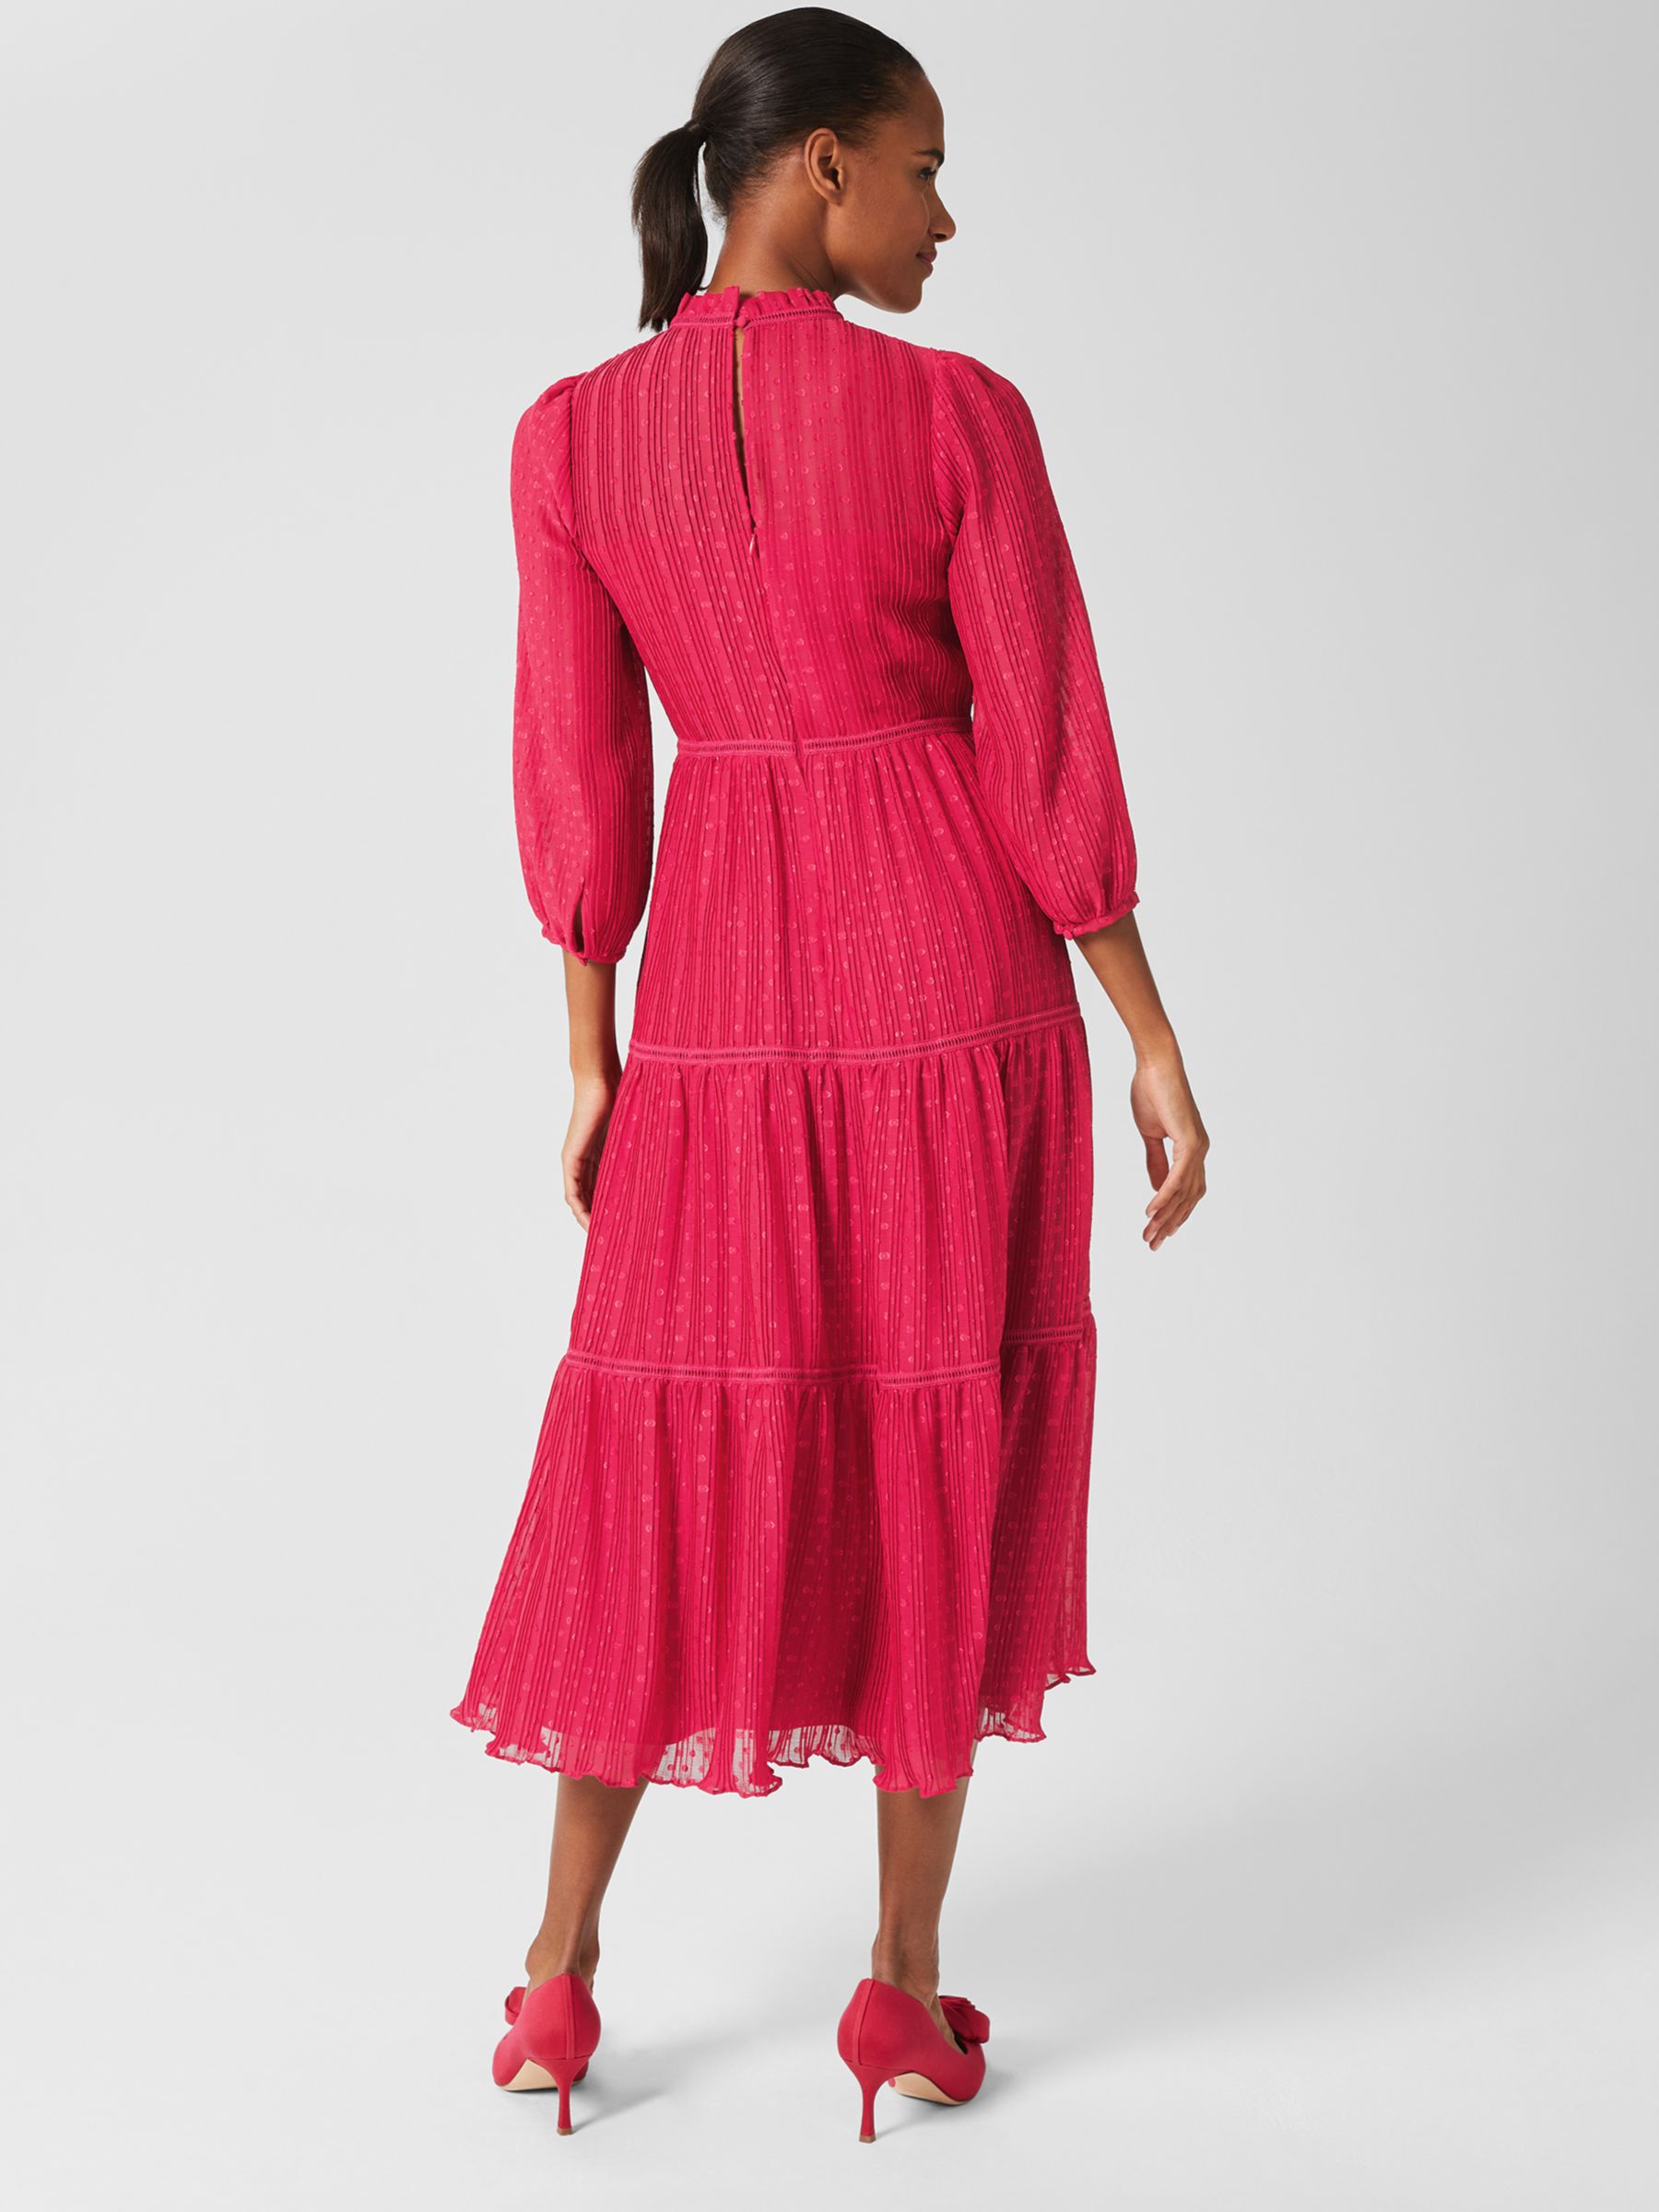 Hobbs Colette Textured Midi Dress, Cerise Pink, 6